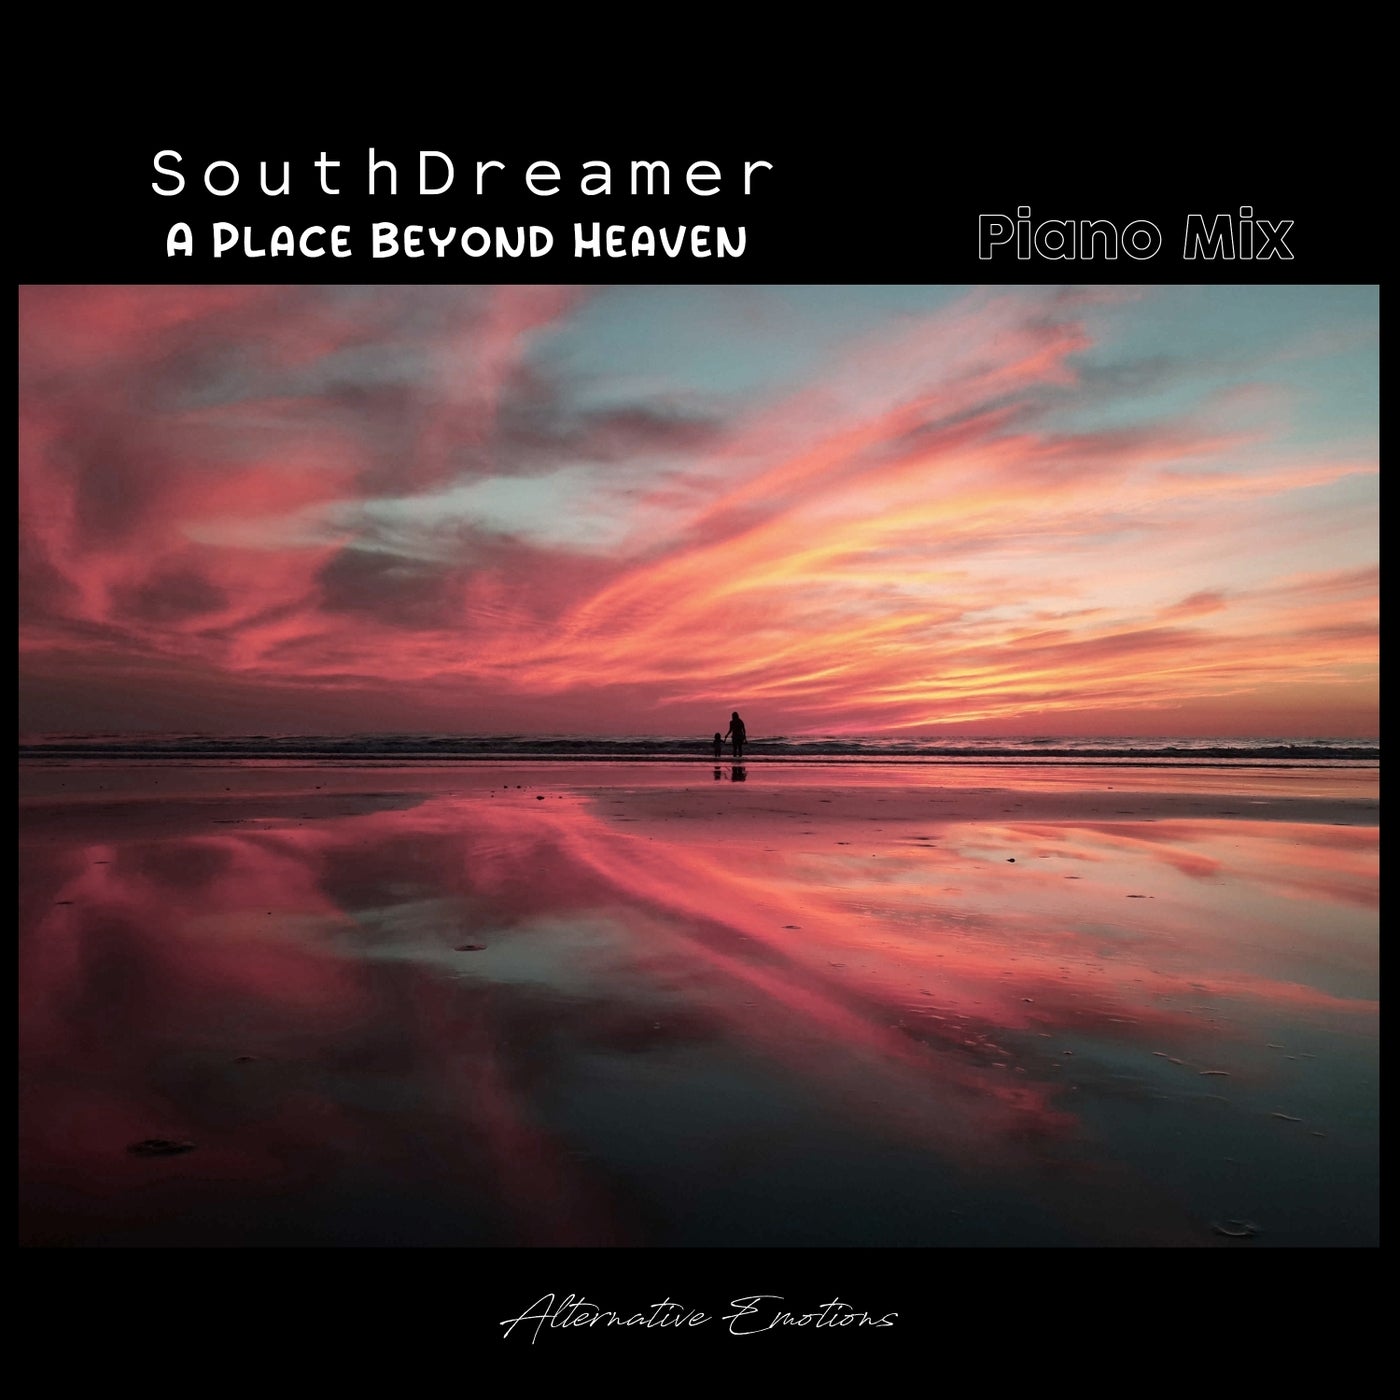 A Place Beyond Heaven (Piano Mix)